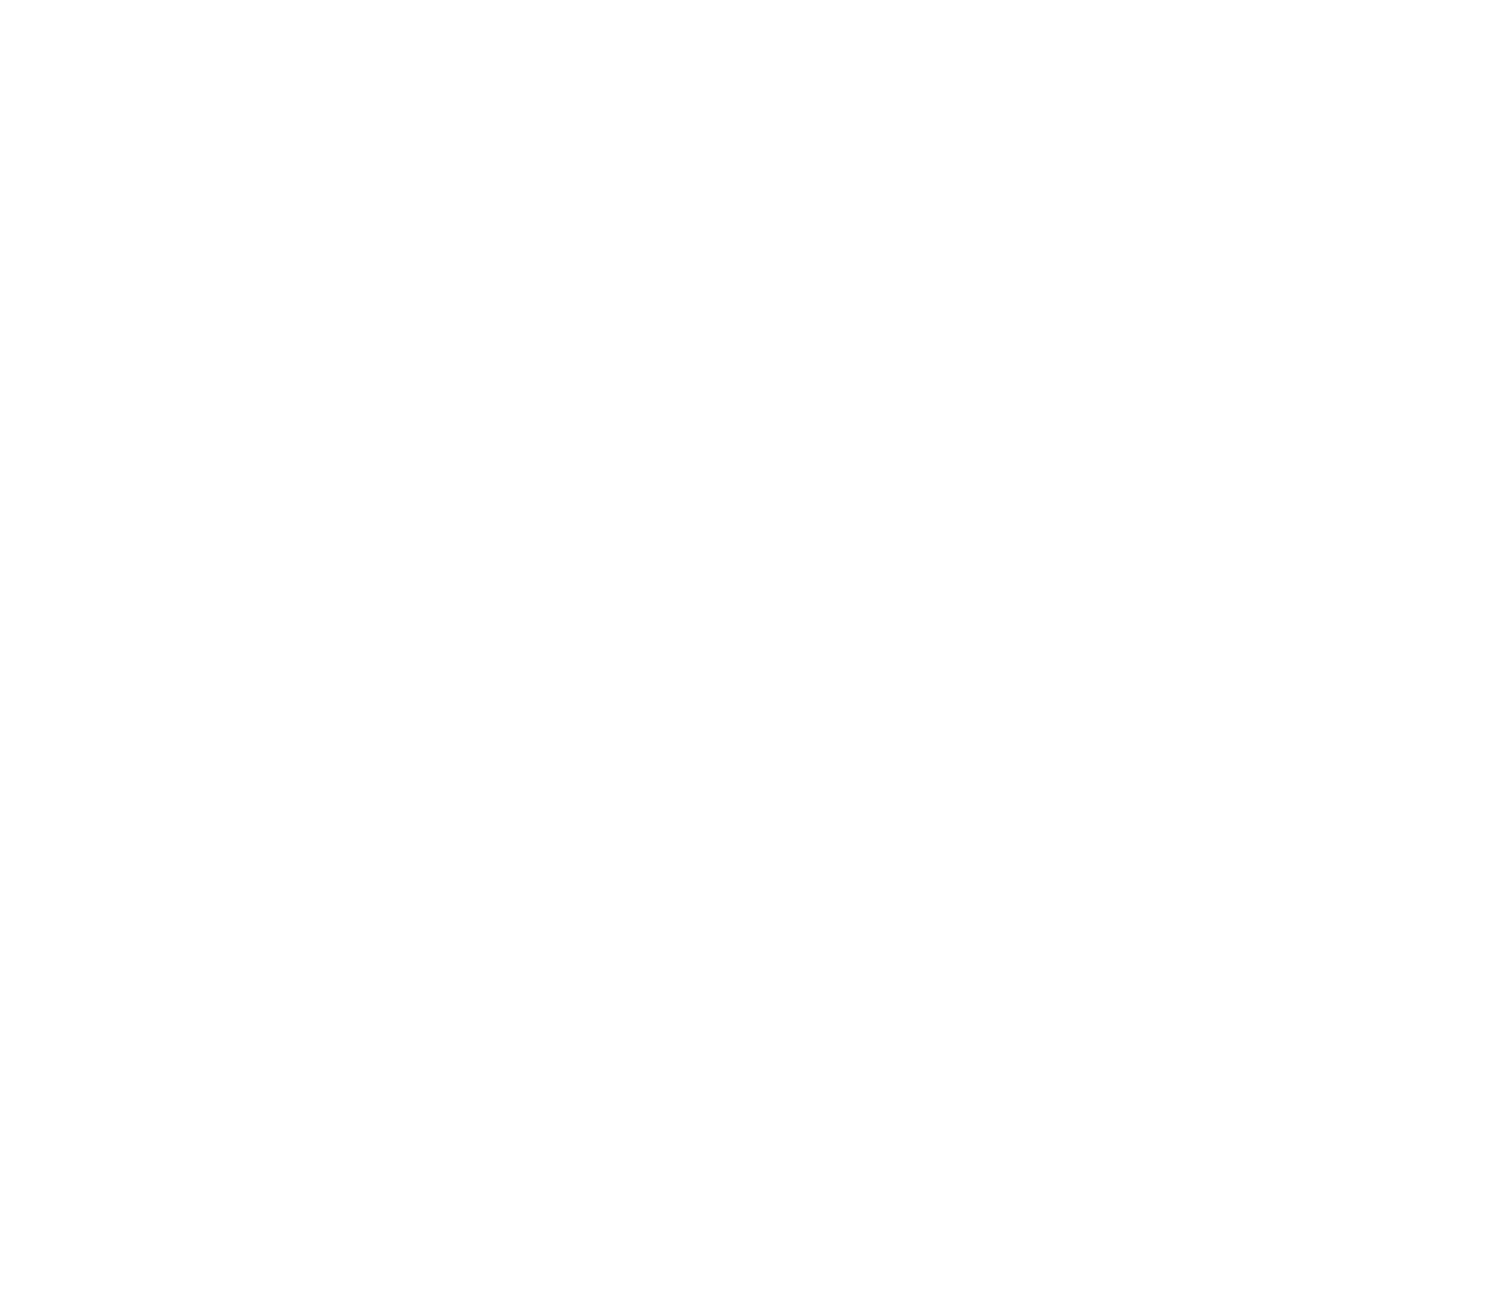 PLANNING 13 VARIATION